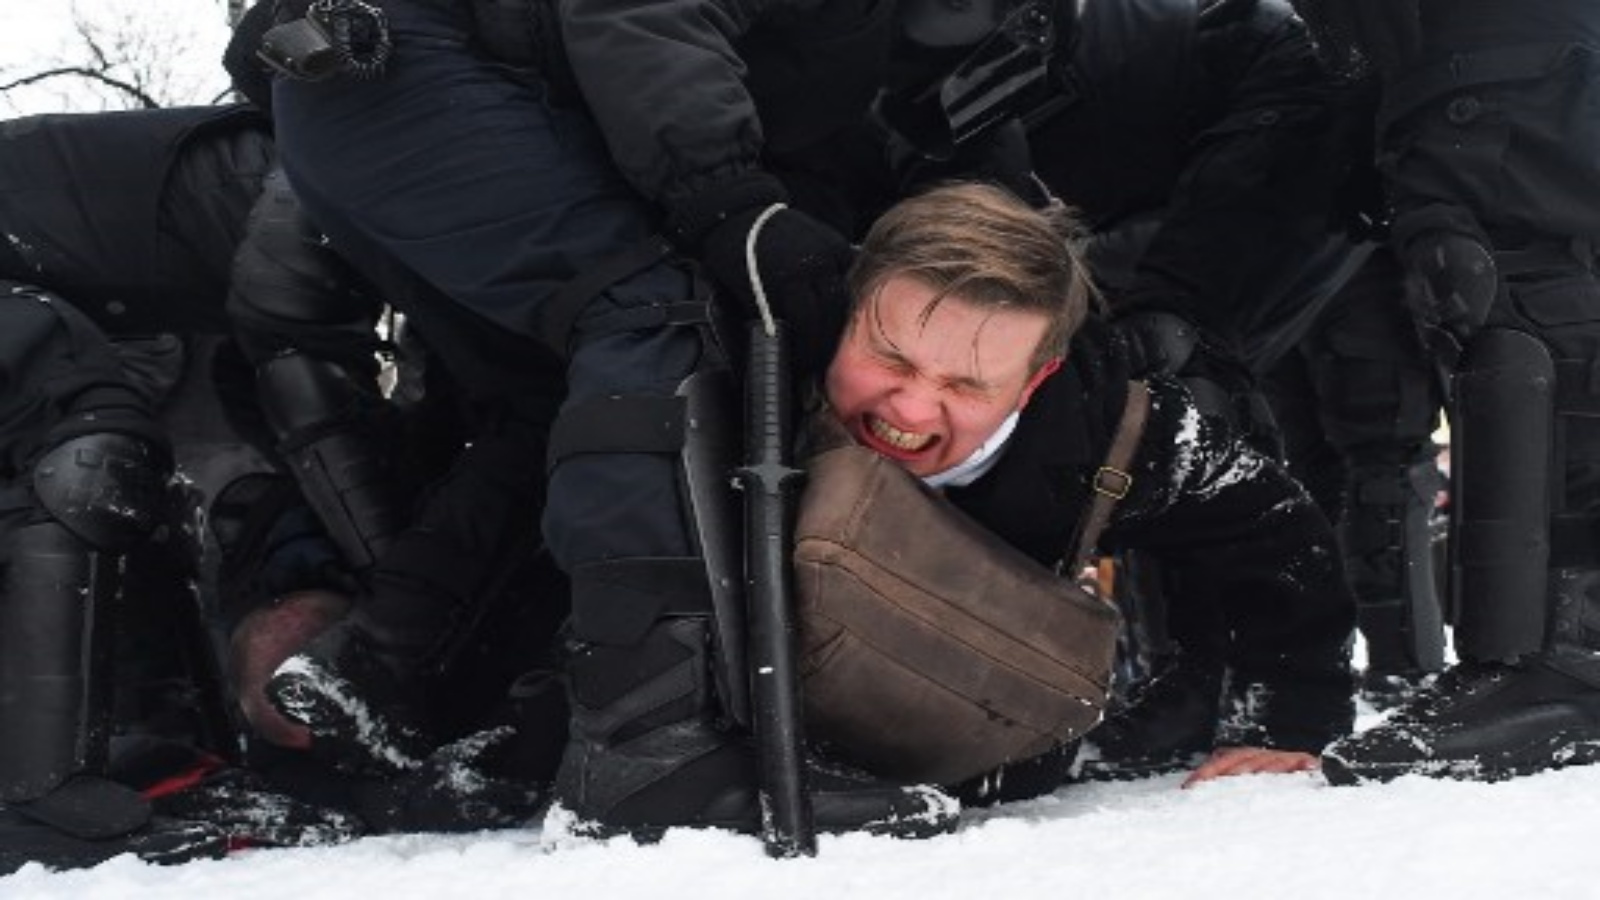 تحتجز الشرطة رجلاً خلال تجمع حاشد لدعم زعيم المعارضة المسجون أليكسي نافالني في سانت بطرسبرغ في 31 يناير 2021.